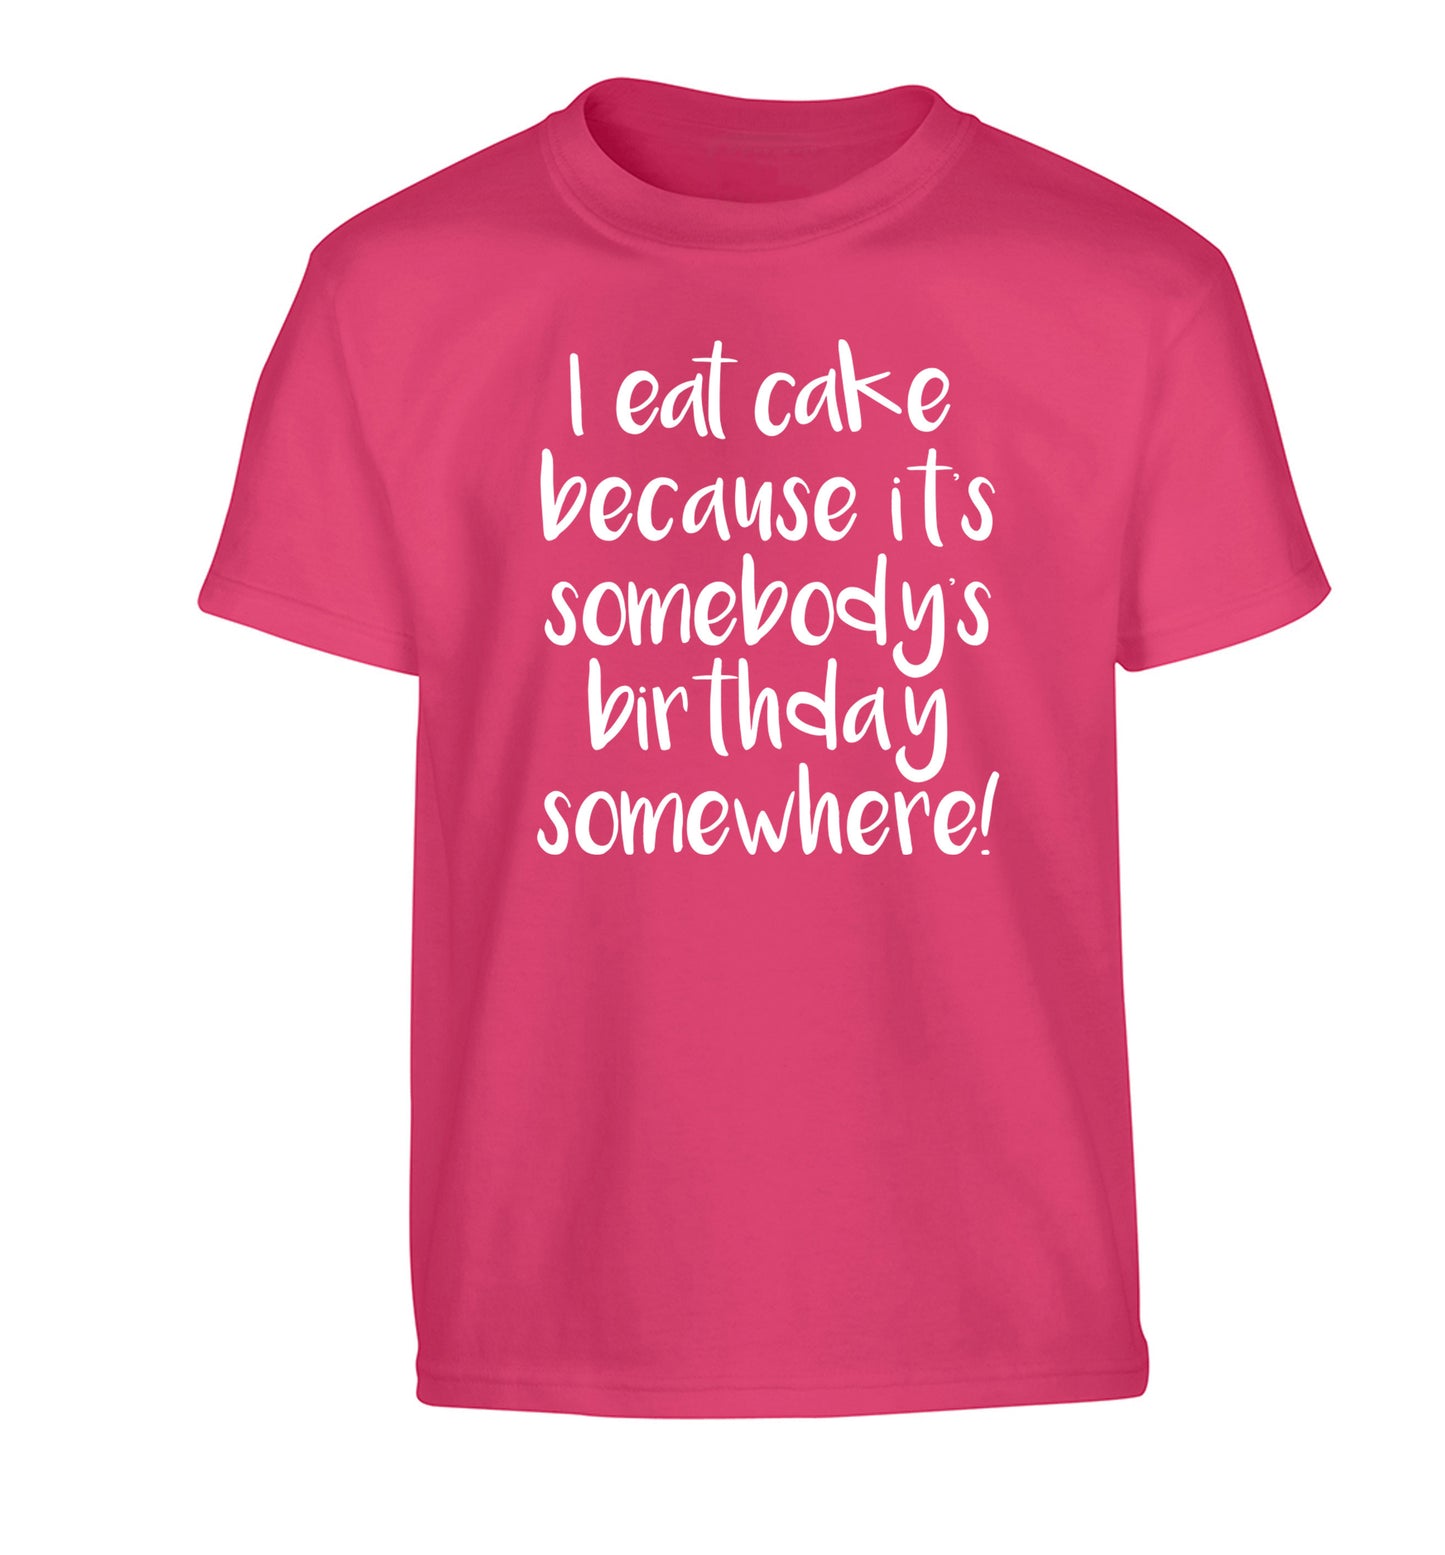 I eat cake because it's somebody's birthday somewhere! Children's pink Tshirt 12-14 Years